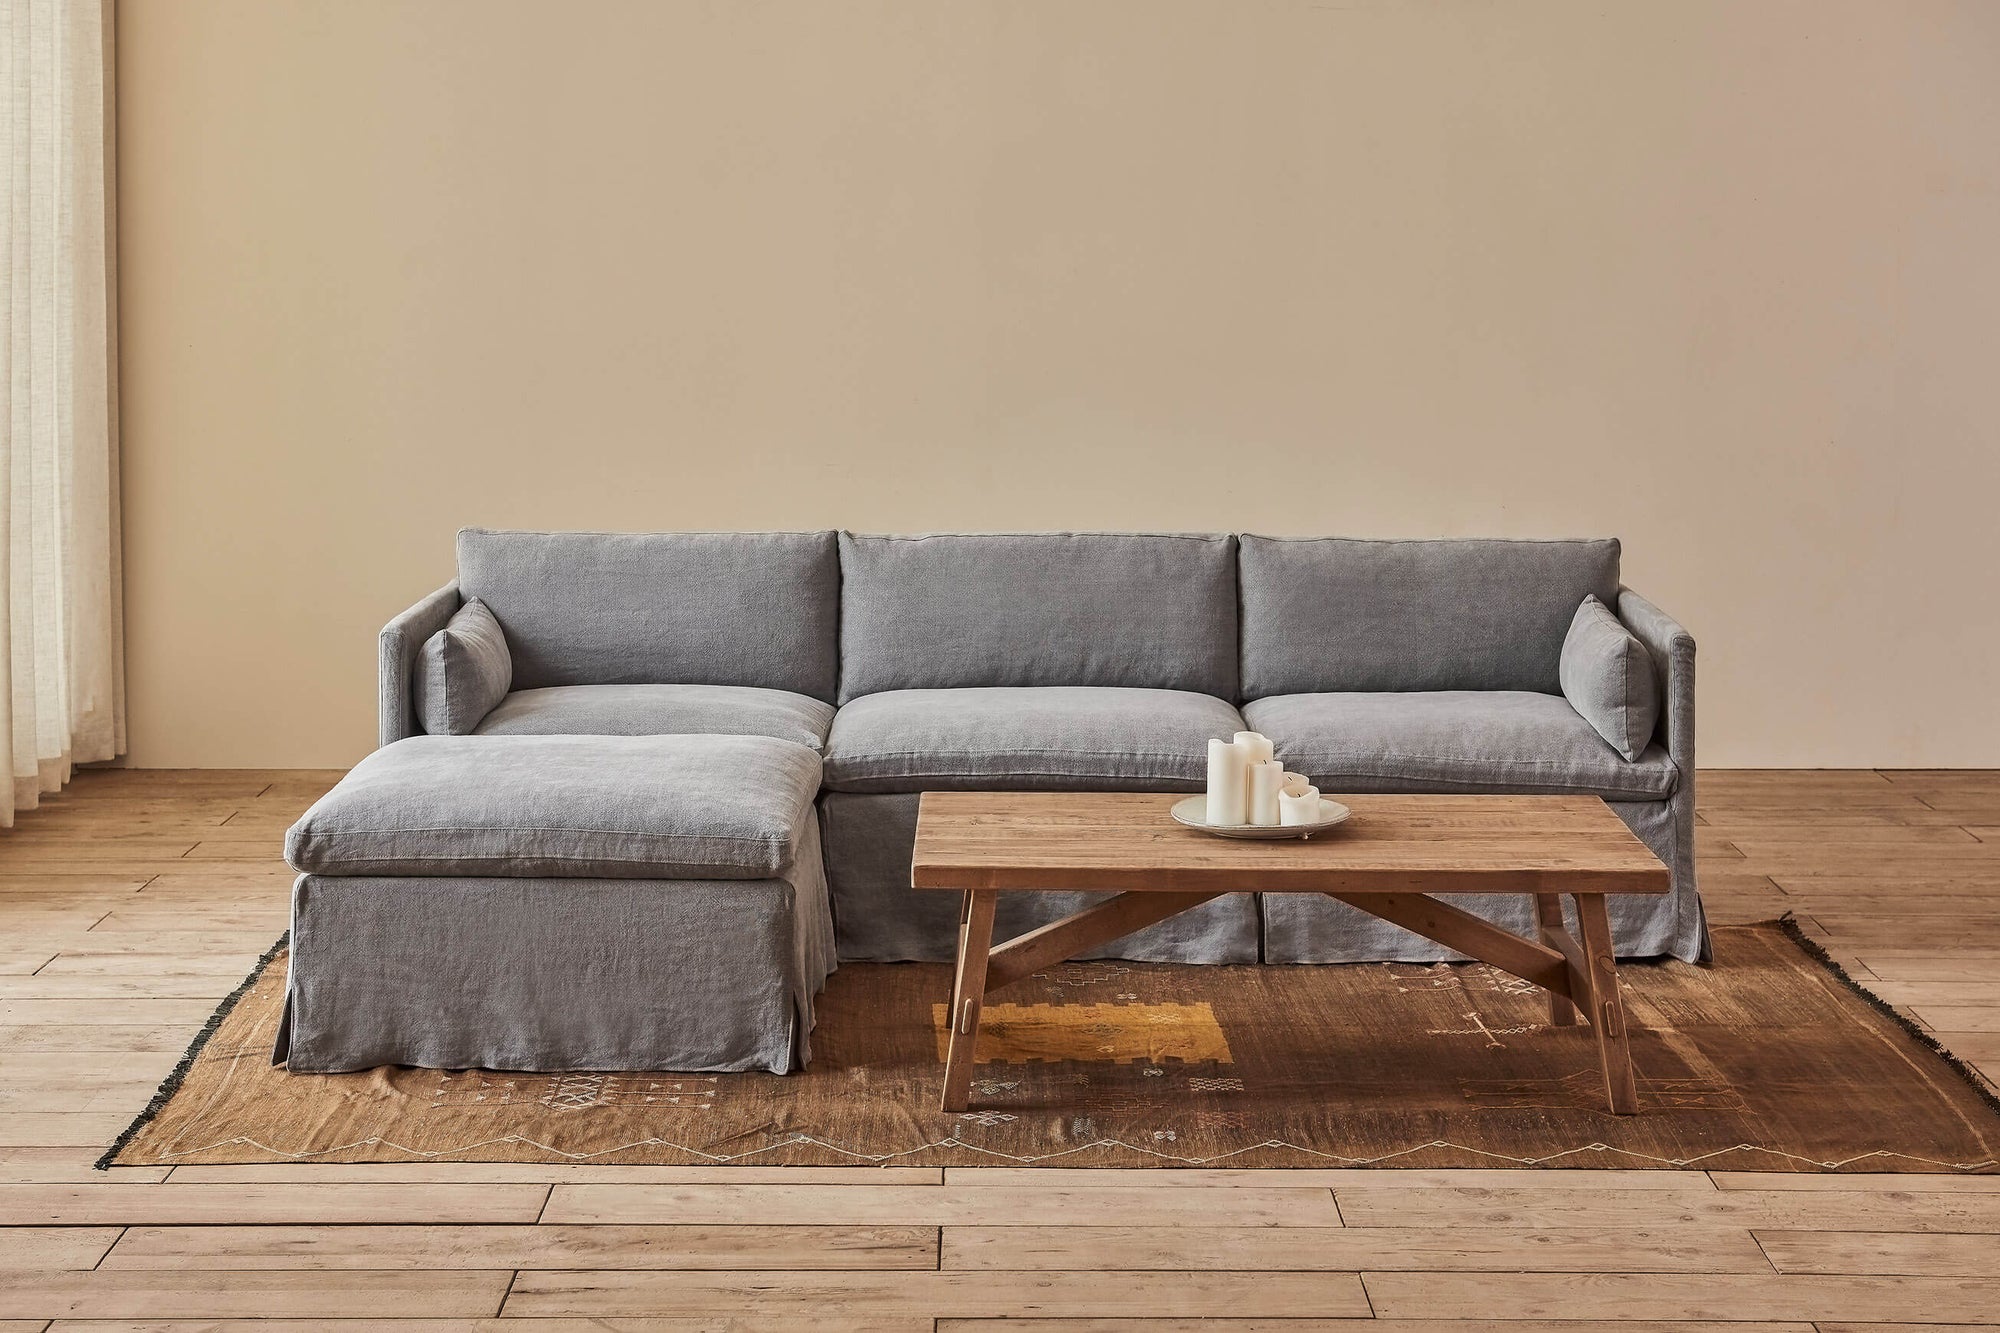 Gabriel 4-Piece Chaise Sectional Sofa in Ink Cap, a medium cool grey Light Weight Linen